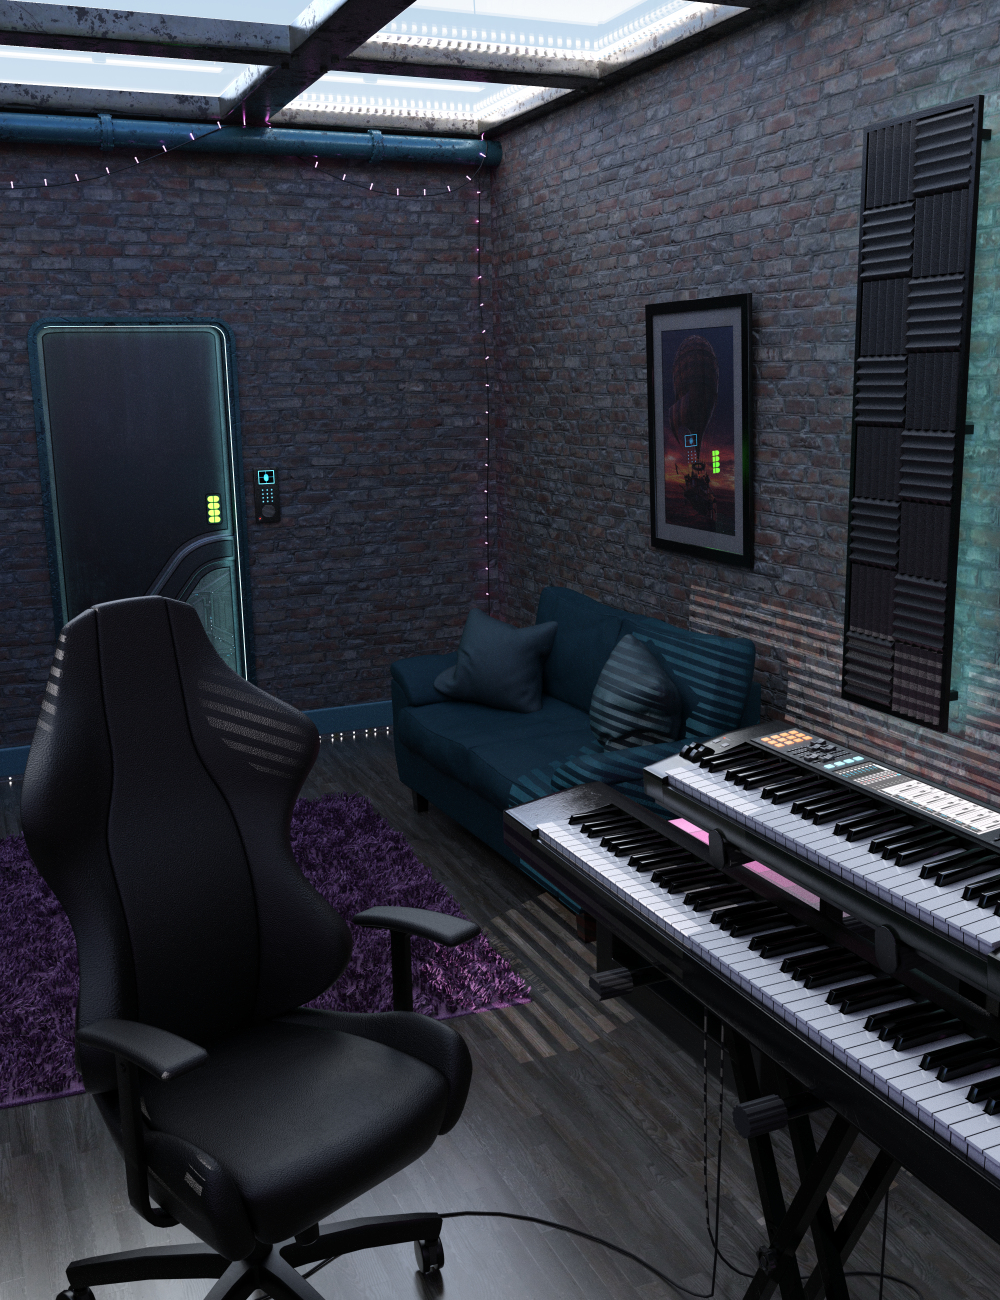 Cyber Studio by: Merlin Studios, 3D Models by Daz 3D